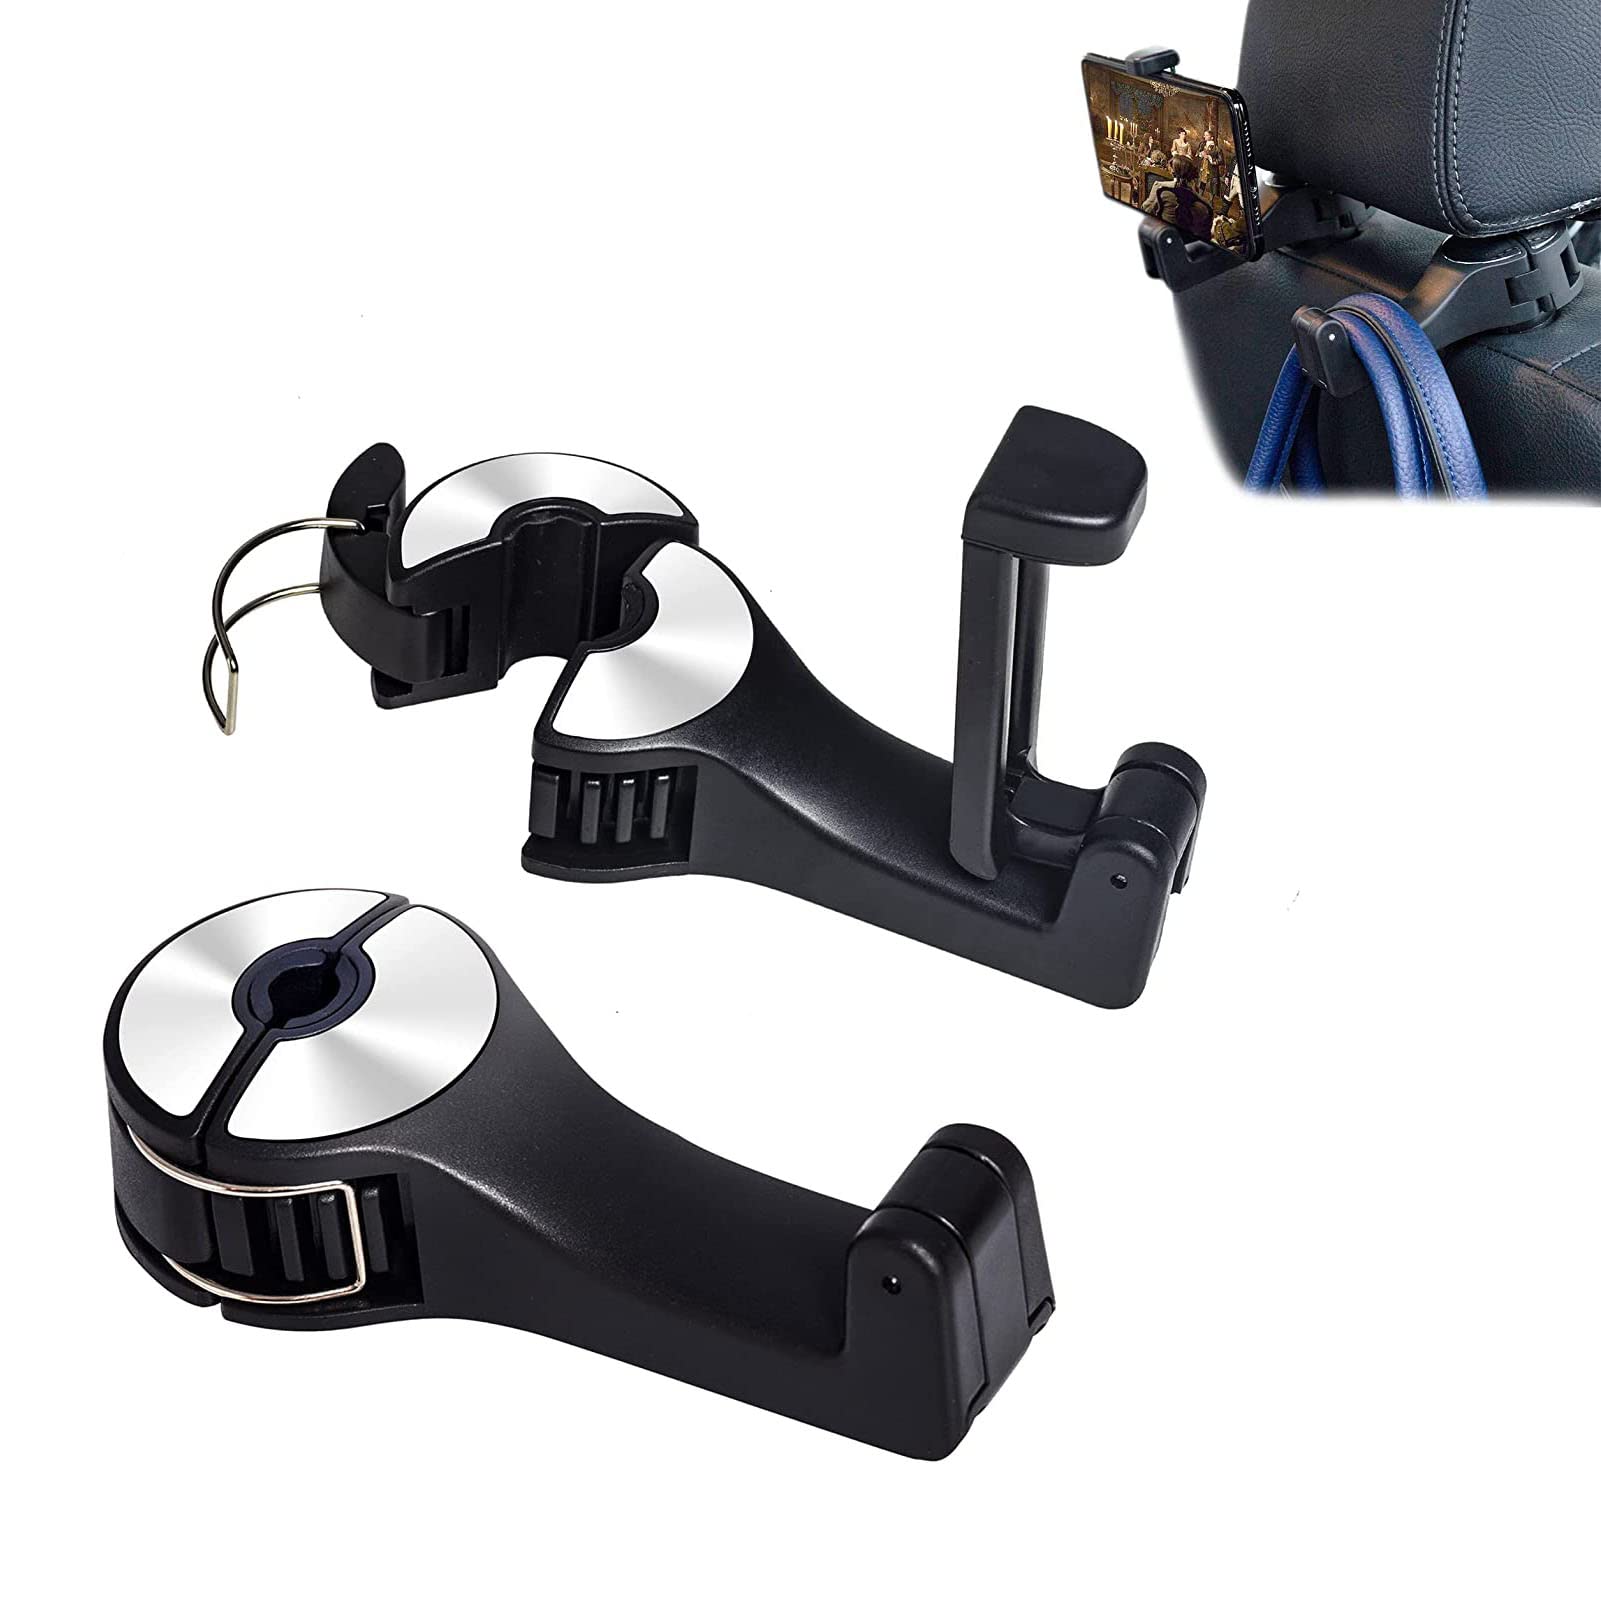 Alyphyly Car Seat Haken für Taschen und Taschen mit Telefonhalter, Universal Car Headrest Storage Organizer Haken 360° Rotation 2 in 1 Car Headrest Haken 2 Pack von Alyphyly